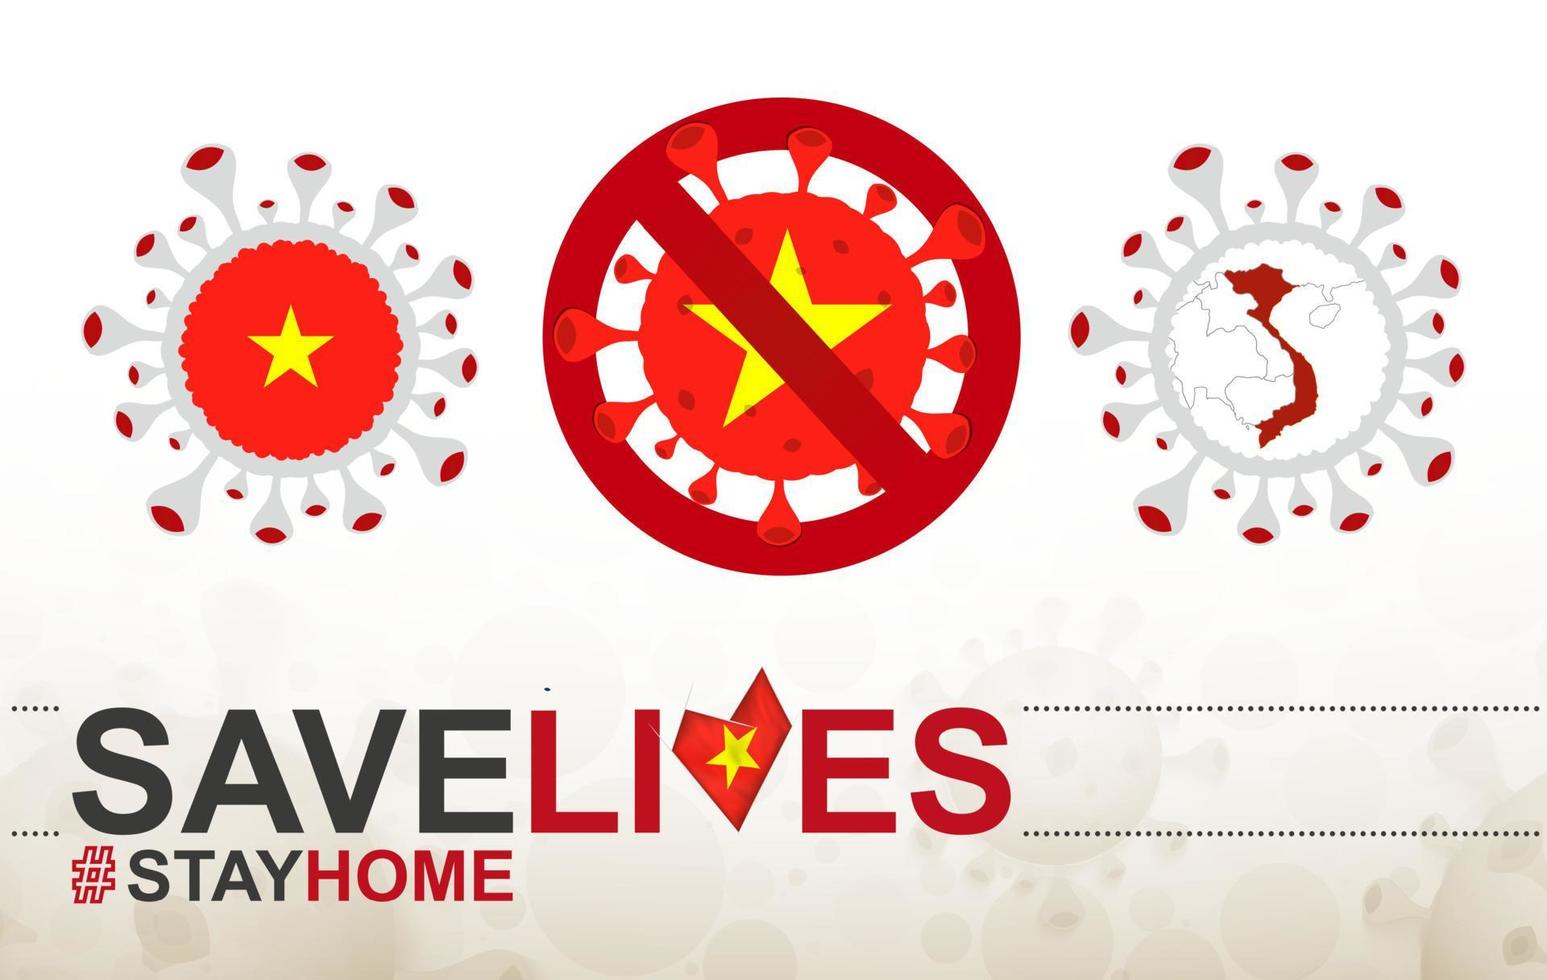 Coronavirus-Zelle mit Vietnam-Flagge und Karte. Stop-Covid-19-Schild, Slogan Save Lives Stay Home mit Flagge Vietnams vektor